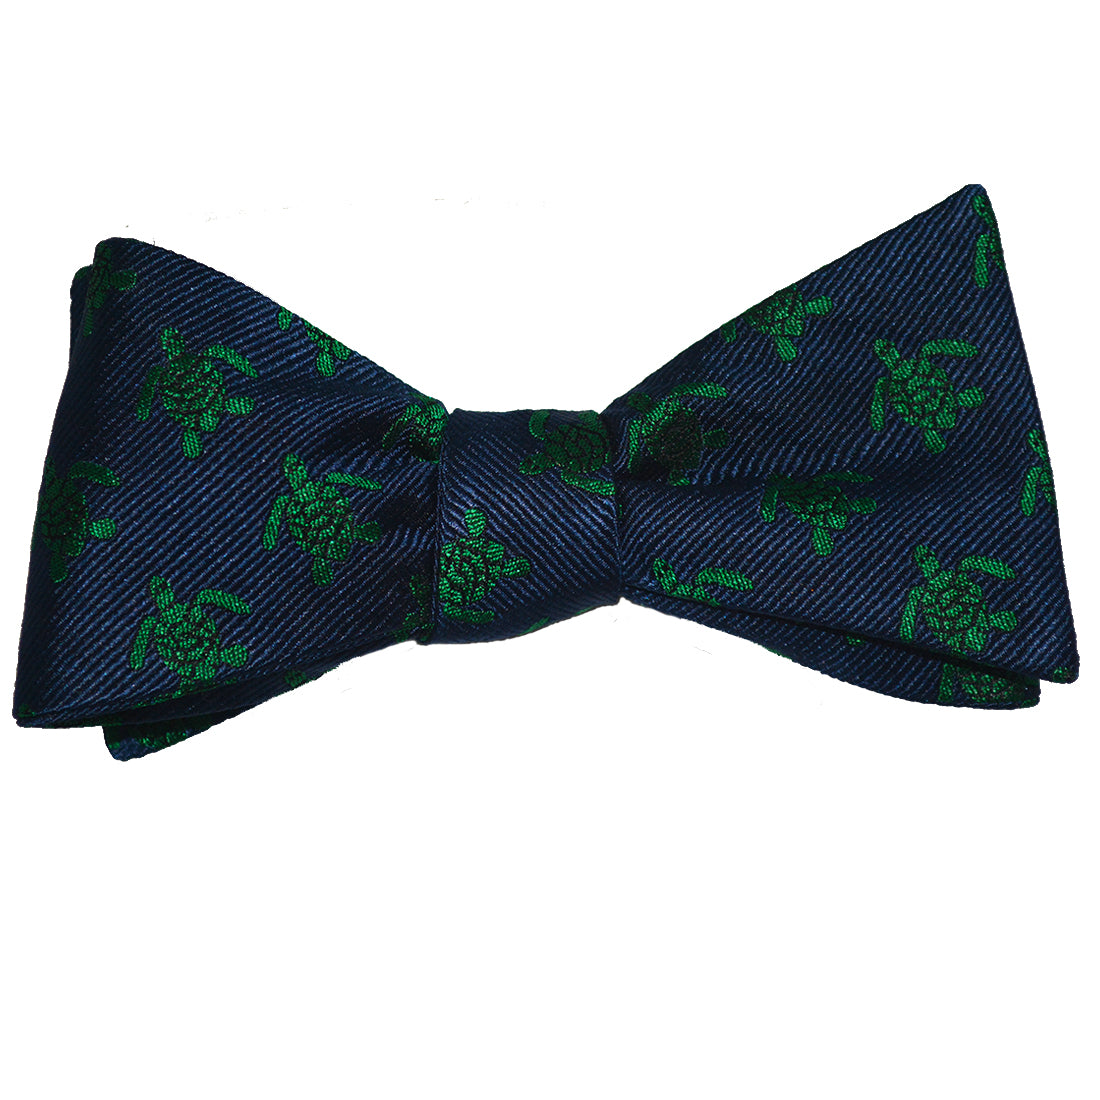 Turtle Bow Tie - Green on Navy, Woven Silk – SummerTies